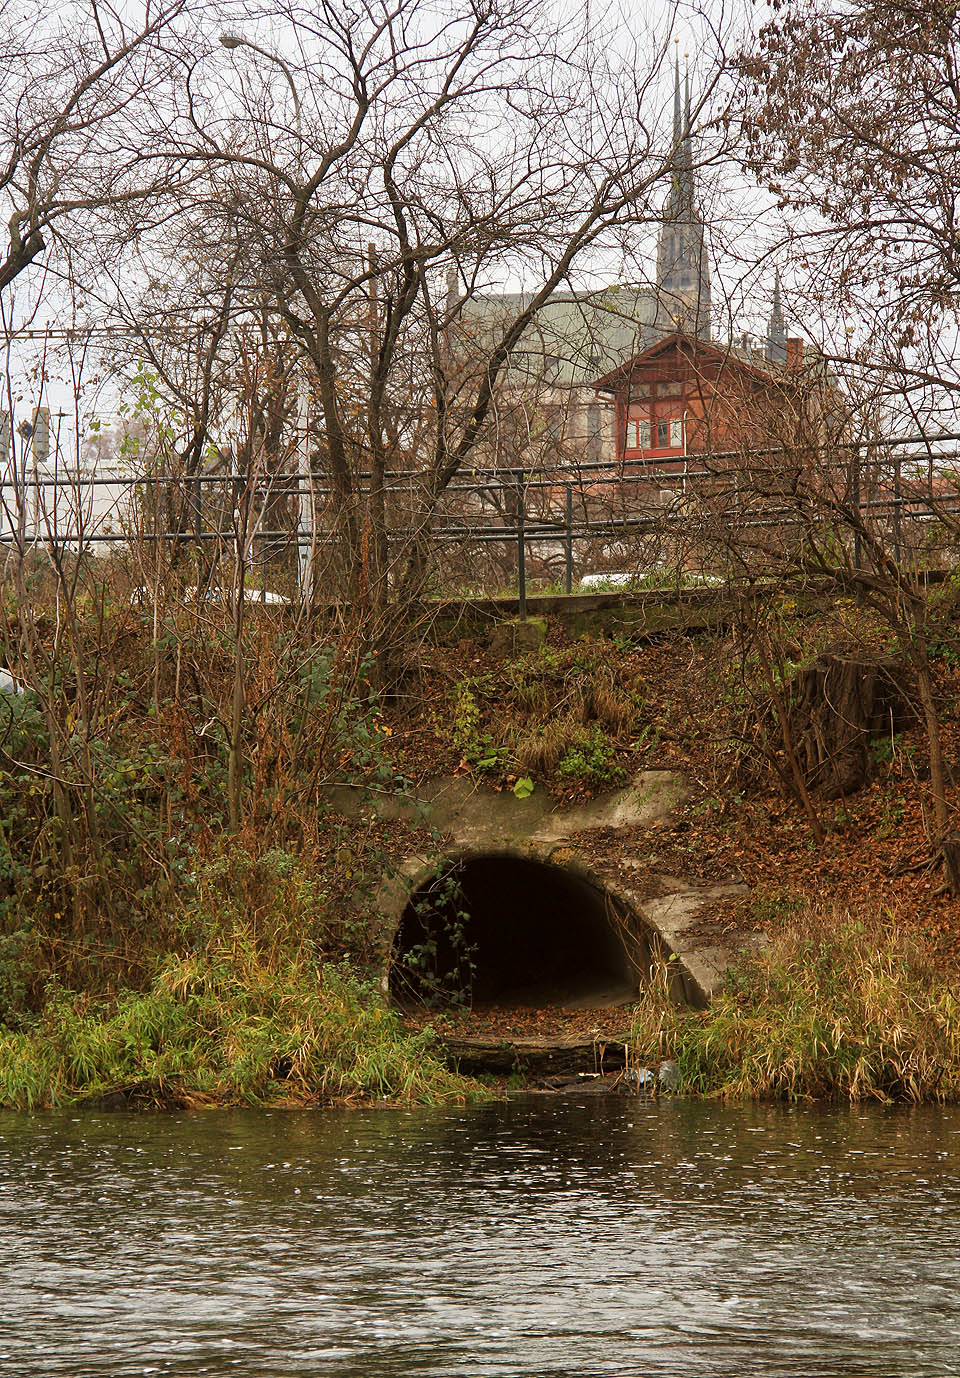 Pohled na odlehčovací komoru OKB05 přes řeku Svratku. Z místa pod železničním mostem by se mohlo zdát, že komora patří společně s chrámem svatých Petra a Pavla a hlavním železničním nádražím k dominantám Brna.